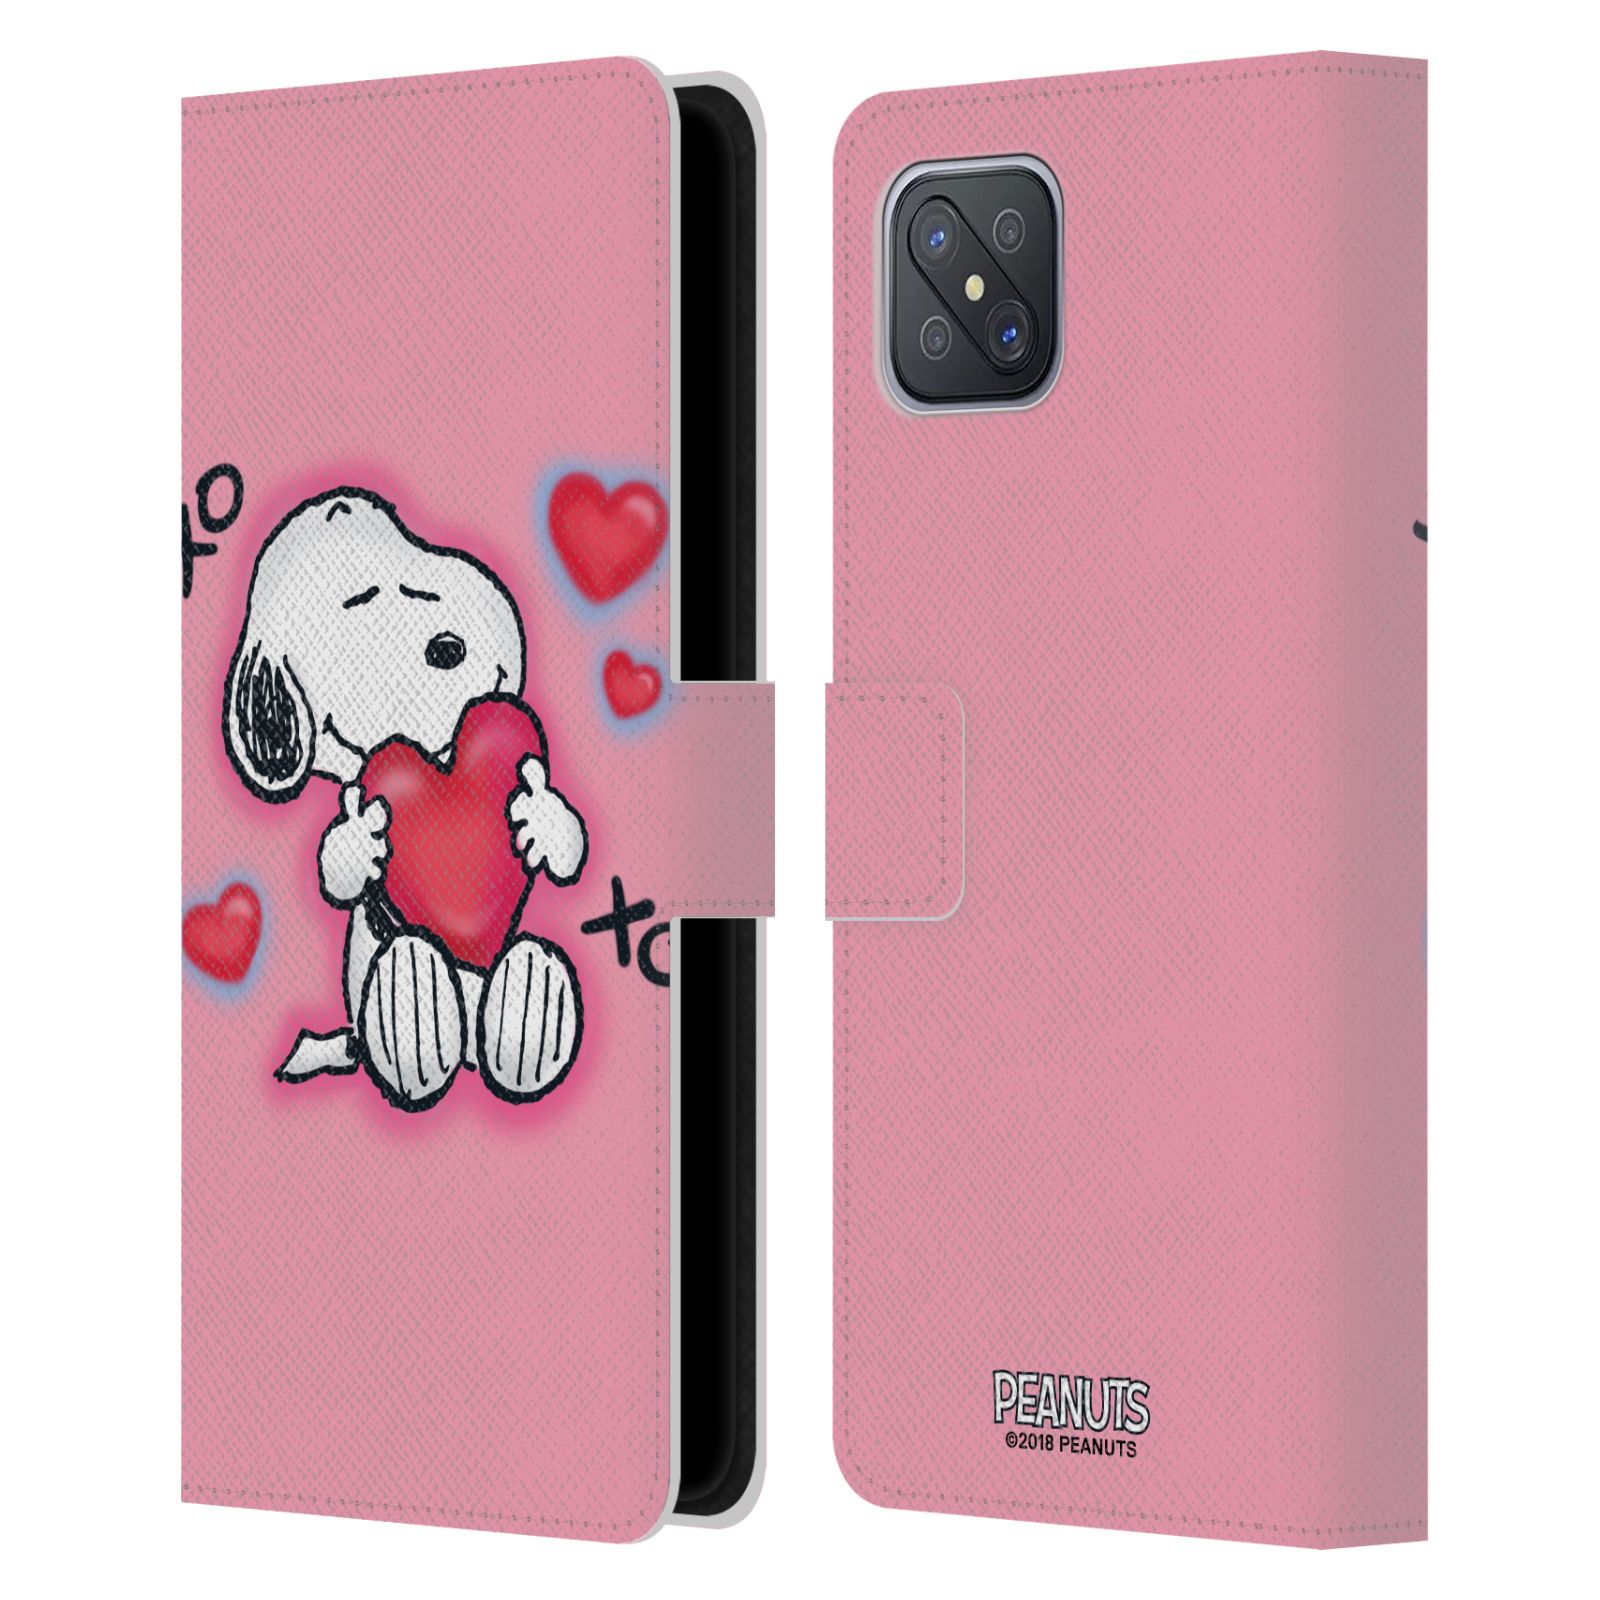 Pouzdro na mobil Oppo A92s - HEAD CASE - Peanuts - Snoopy a srdíčka